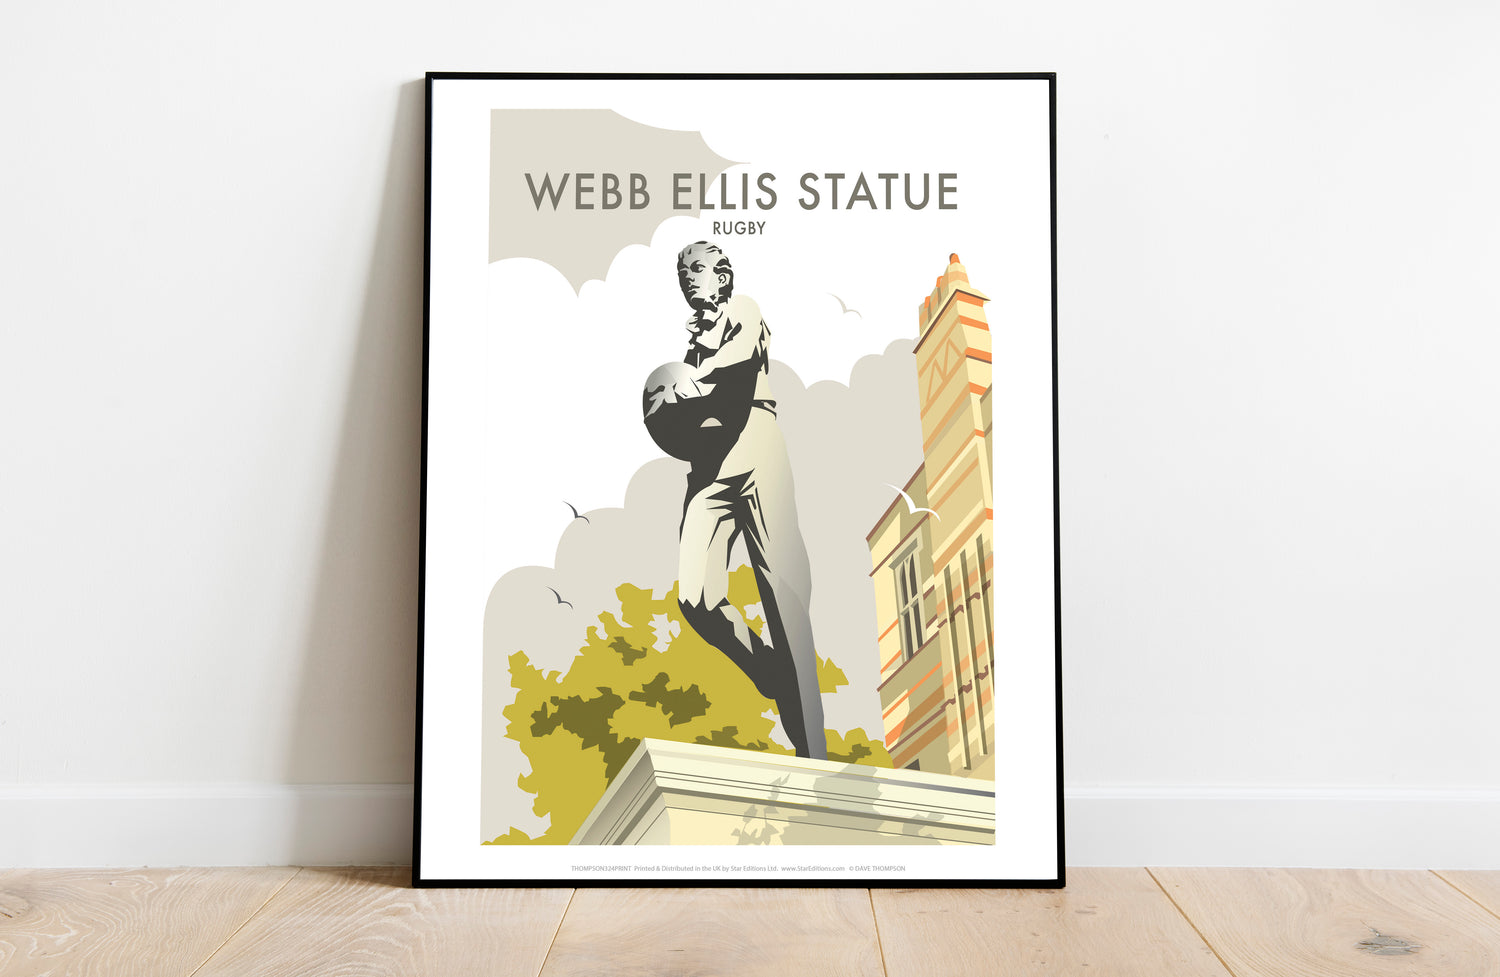 Webb Ellis Statue, Rugby - Art Print